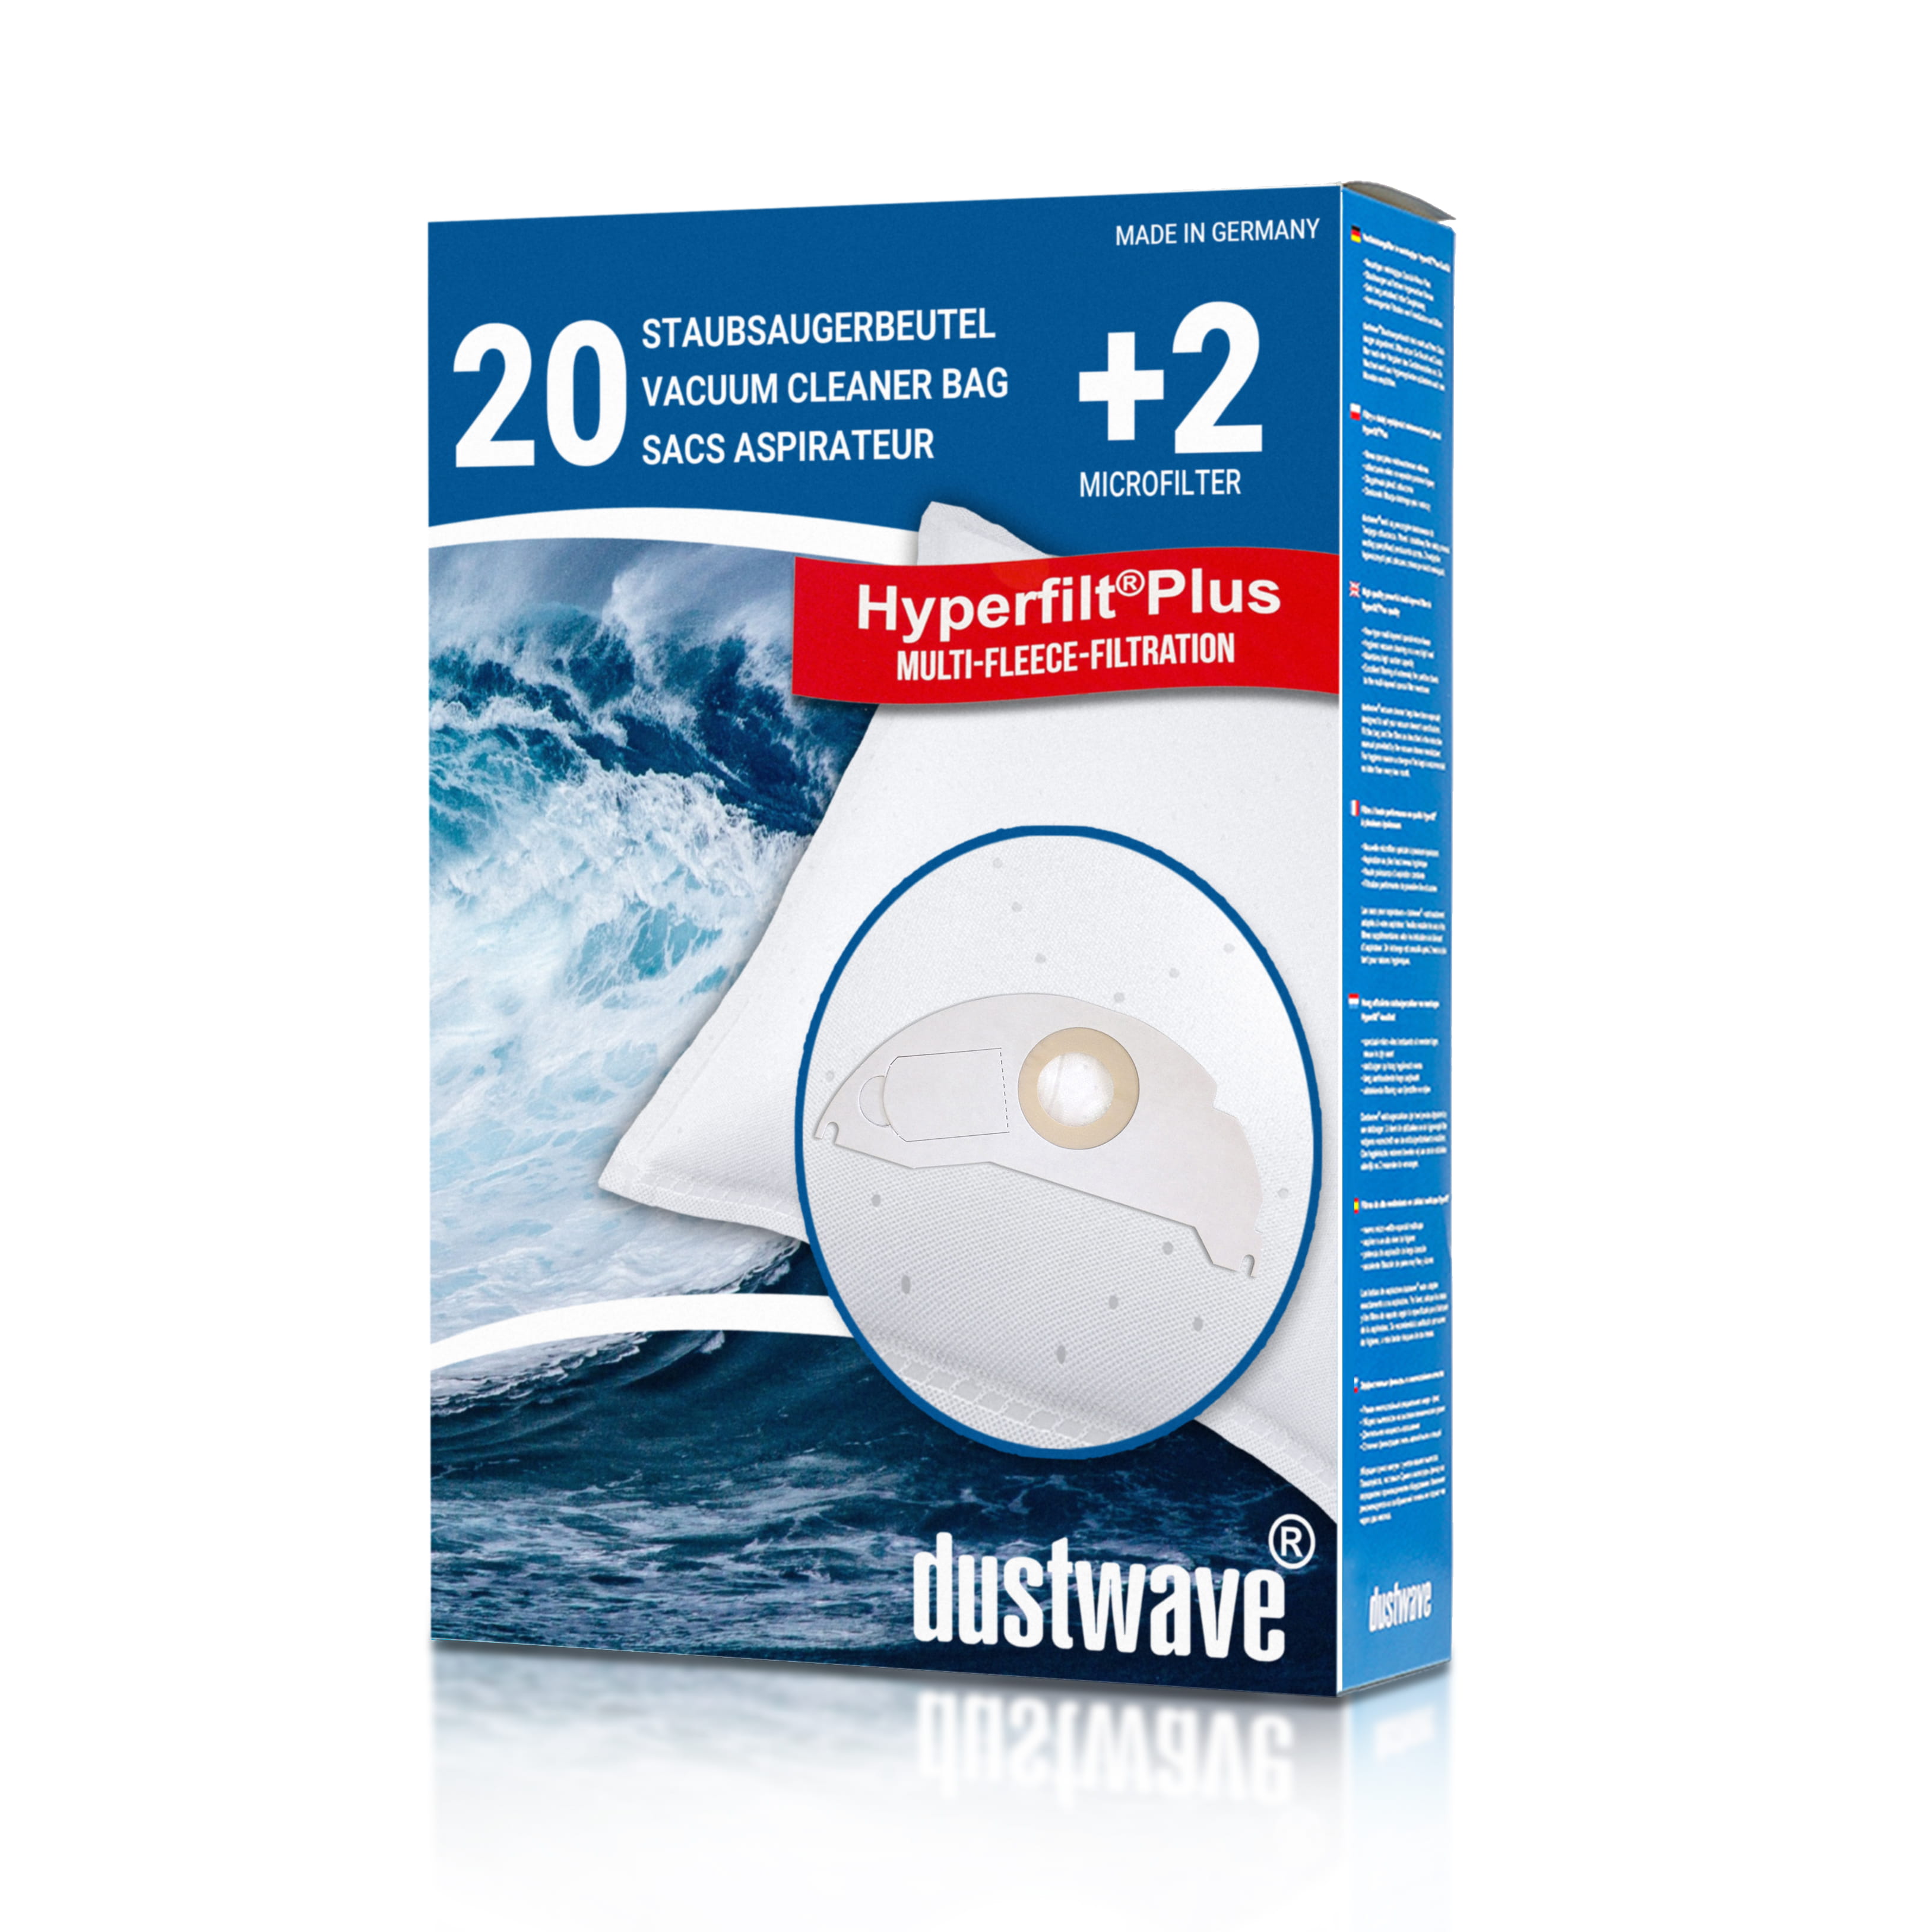 Dustwave® 20 Staubsaugerbeutel für Hoover BD S5125001 - hocheffizient, mehrlagiges Mikrovlies mit Hygieneverschluss - Made in Germany